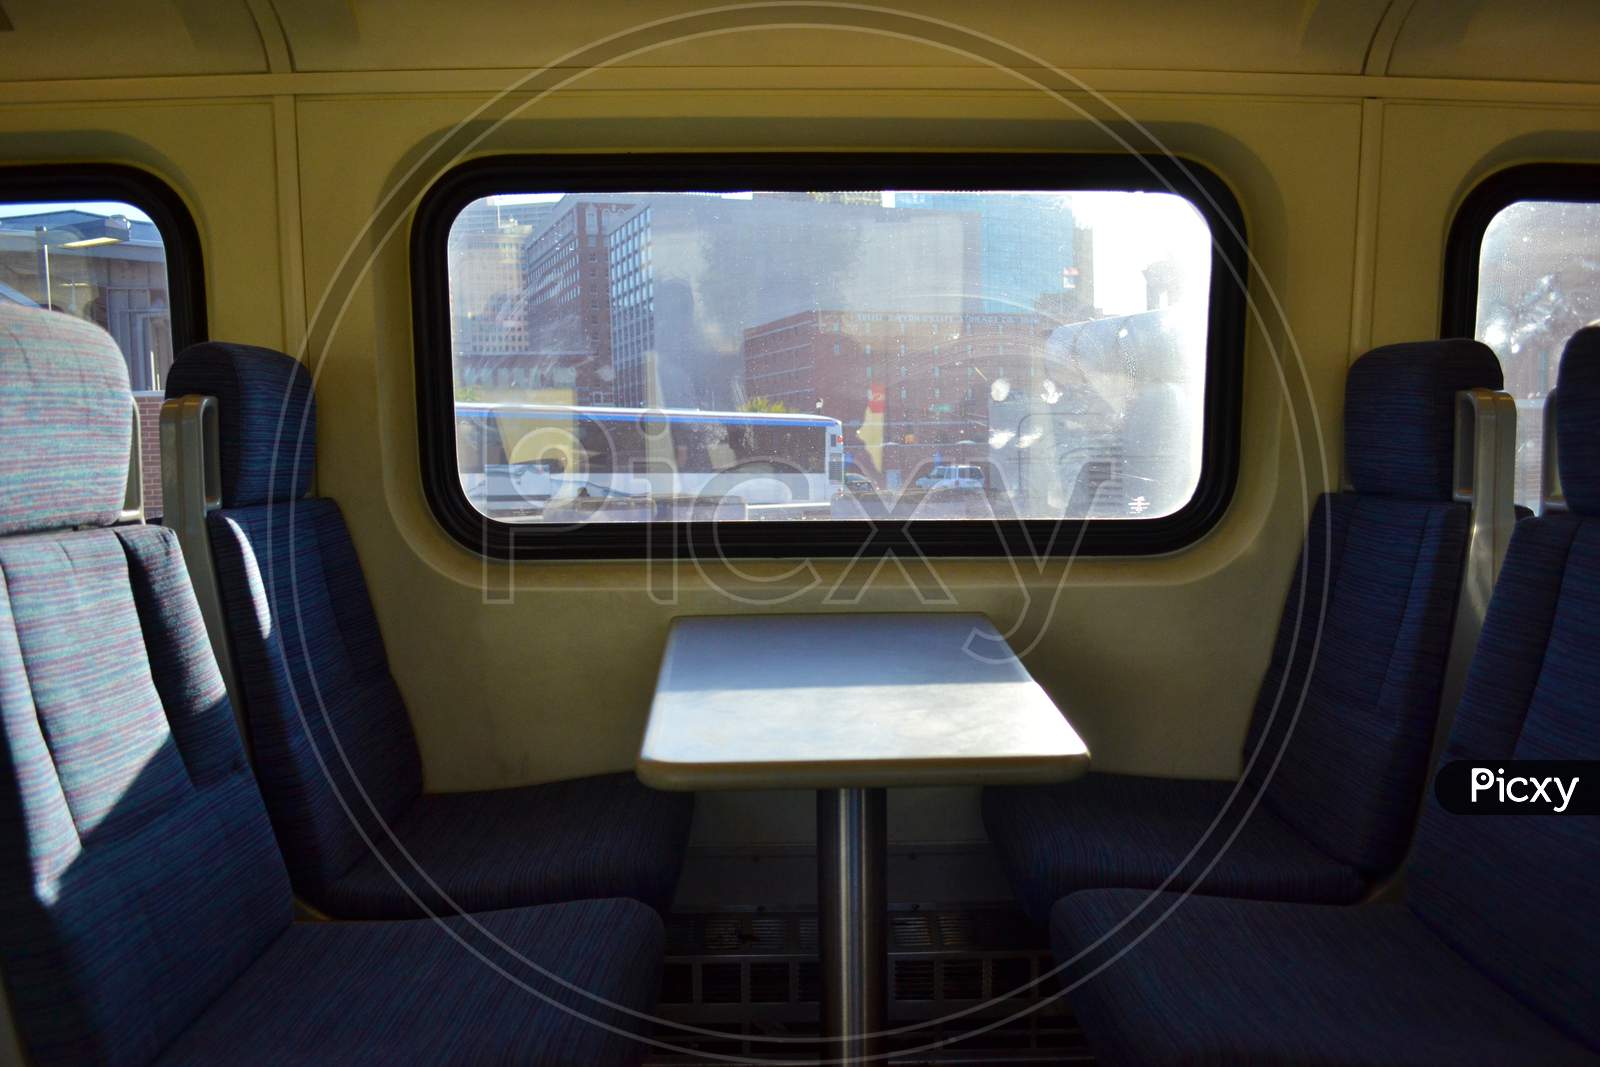 Empty Train Seats by the Window